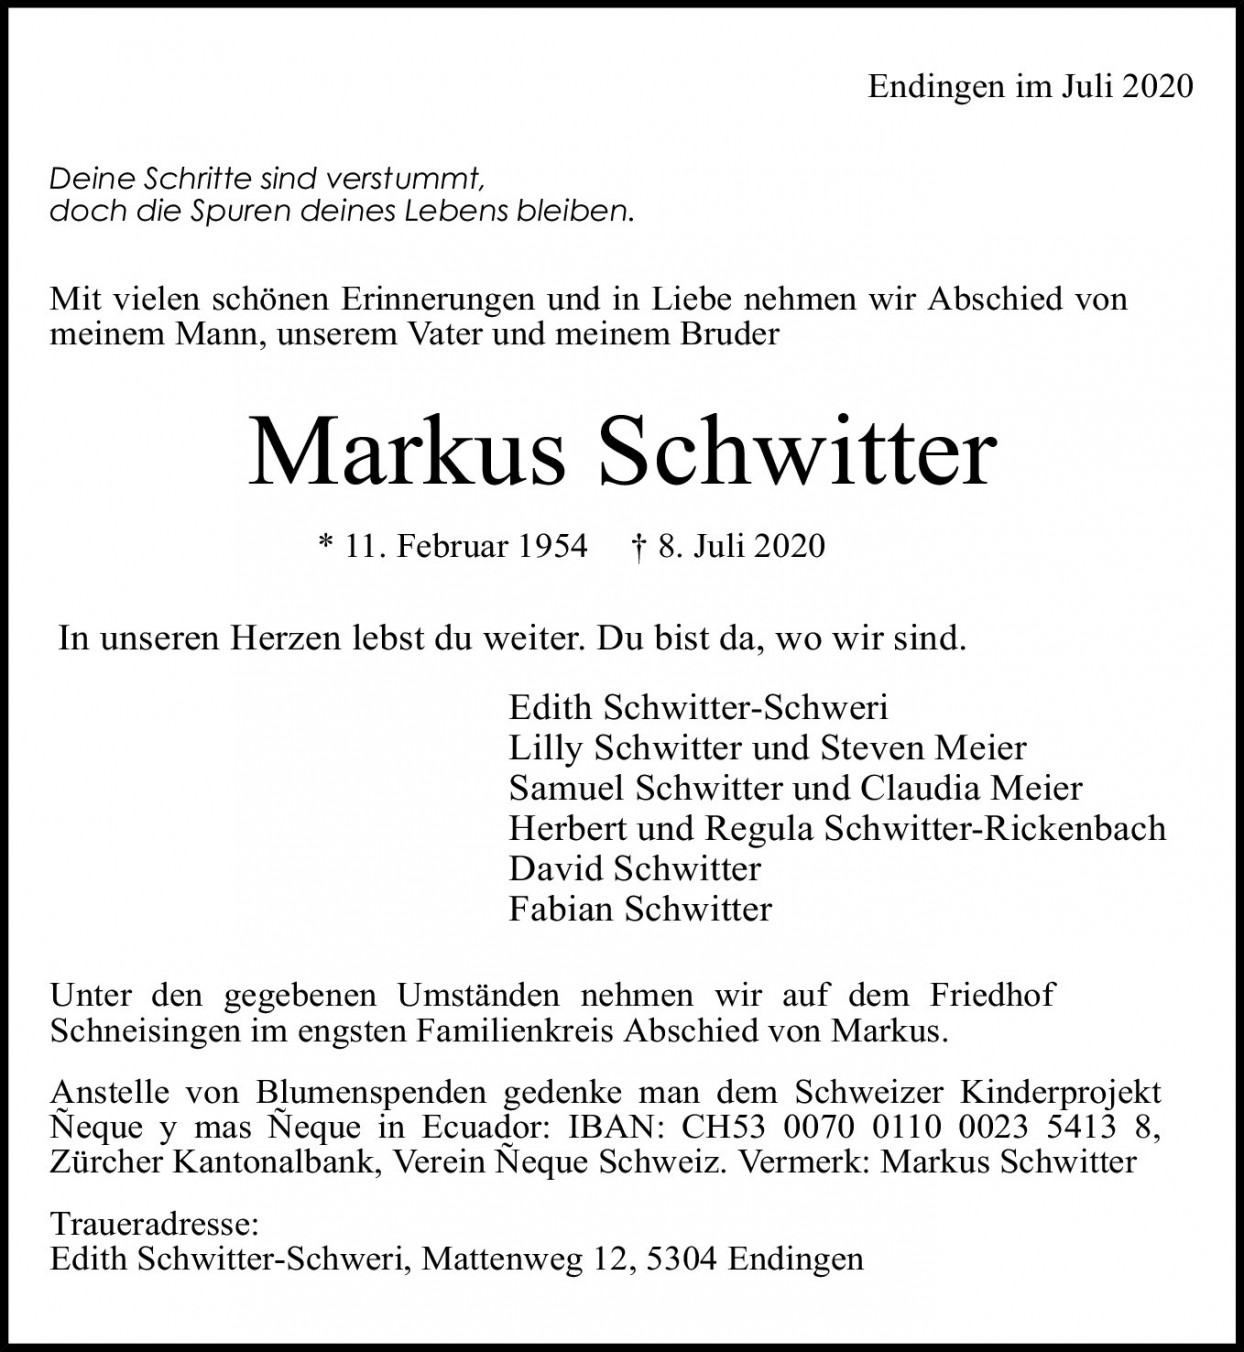 Markus Schwitter